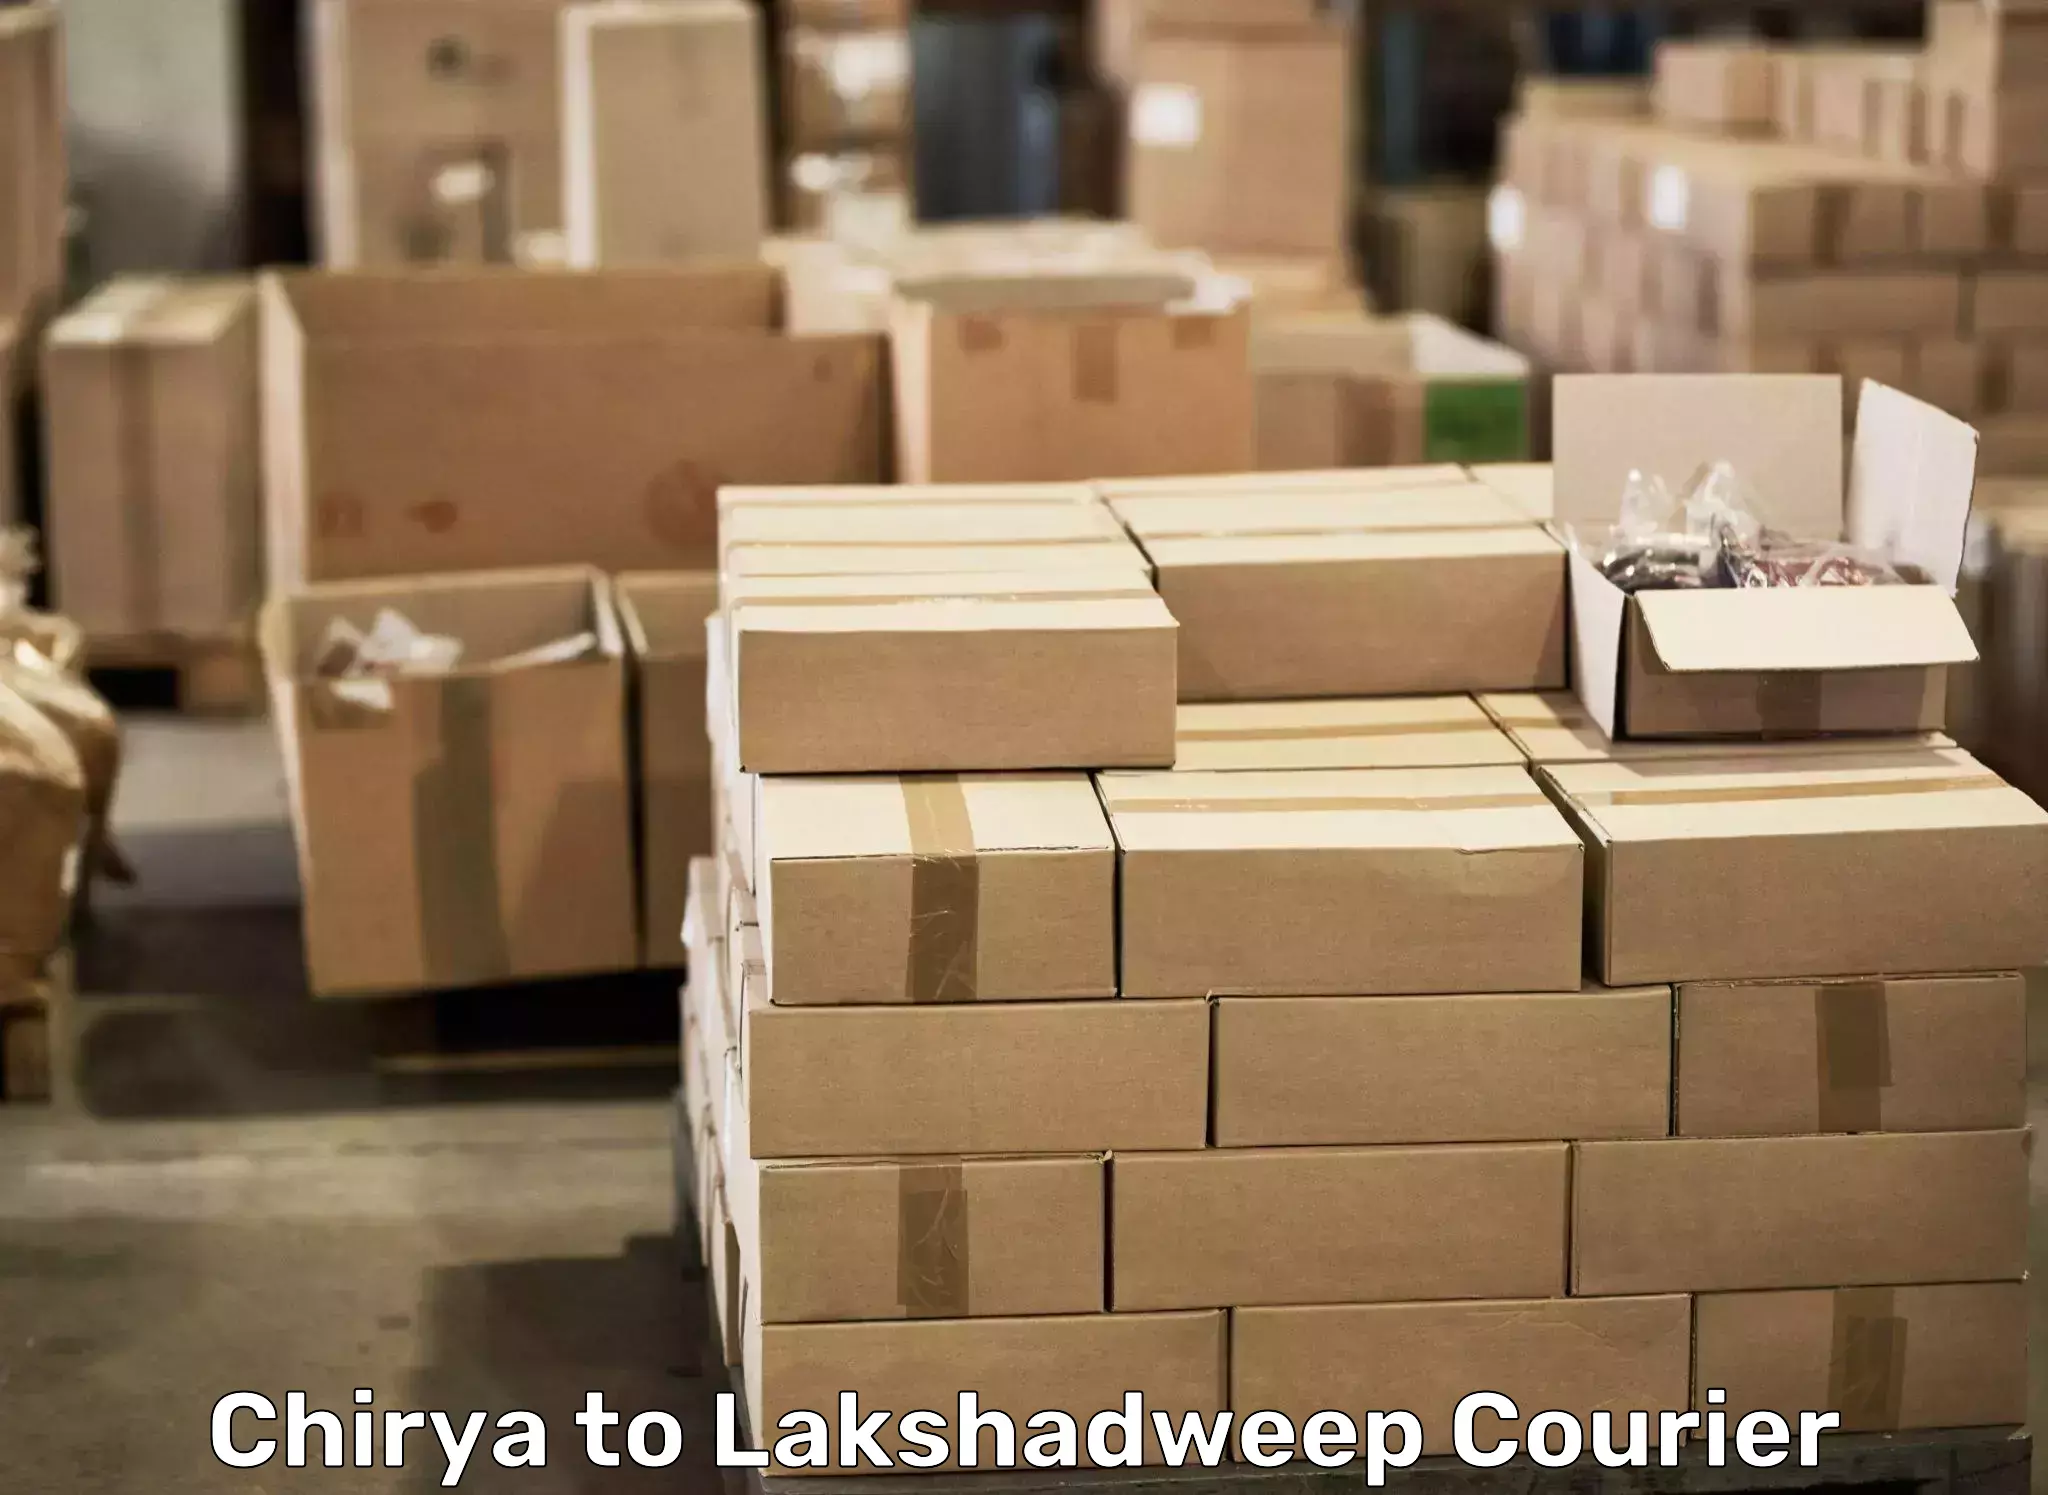 Professional moving company Chirya to Lakshadweep